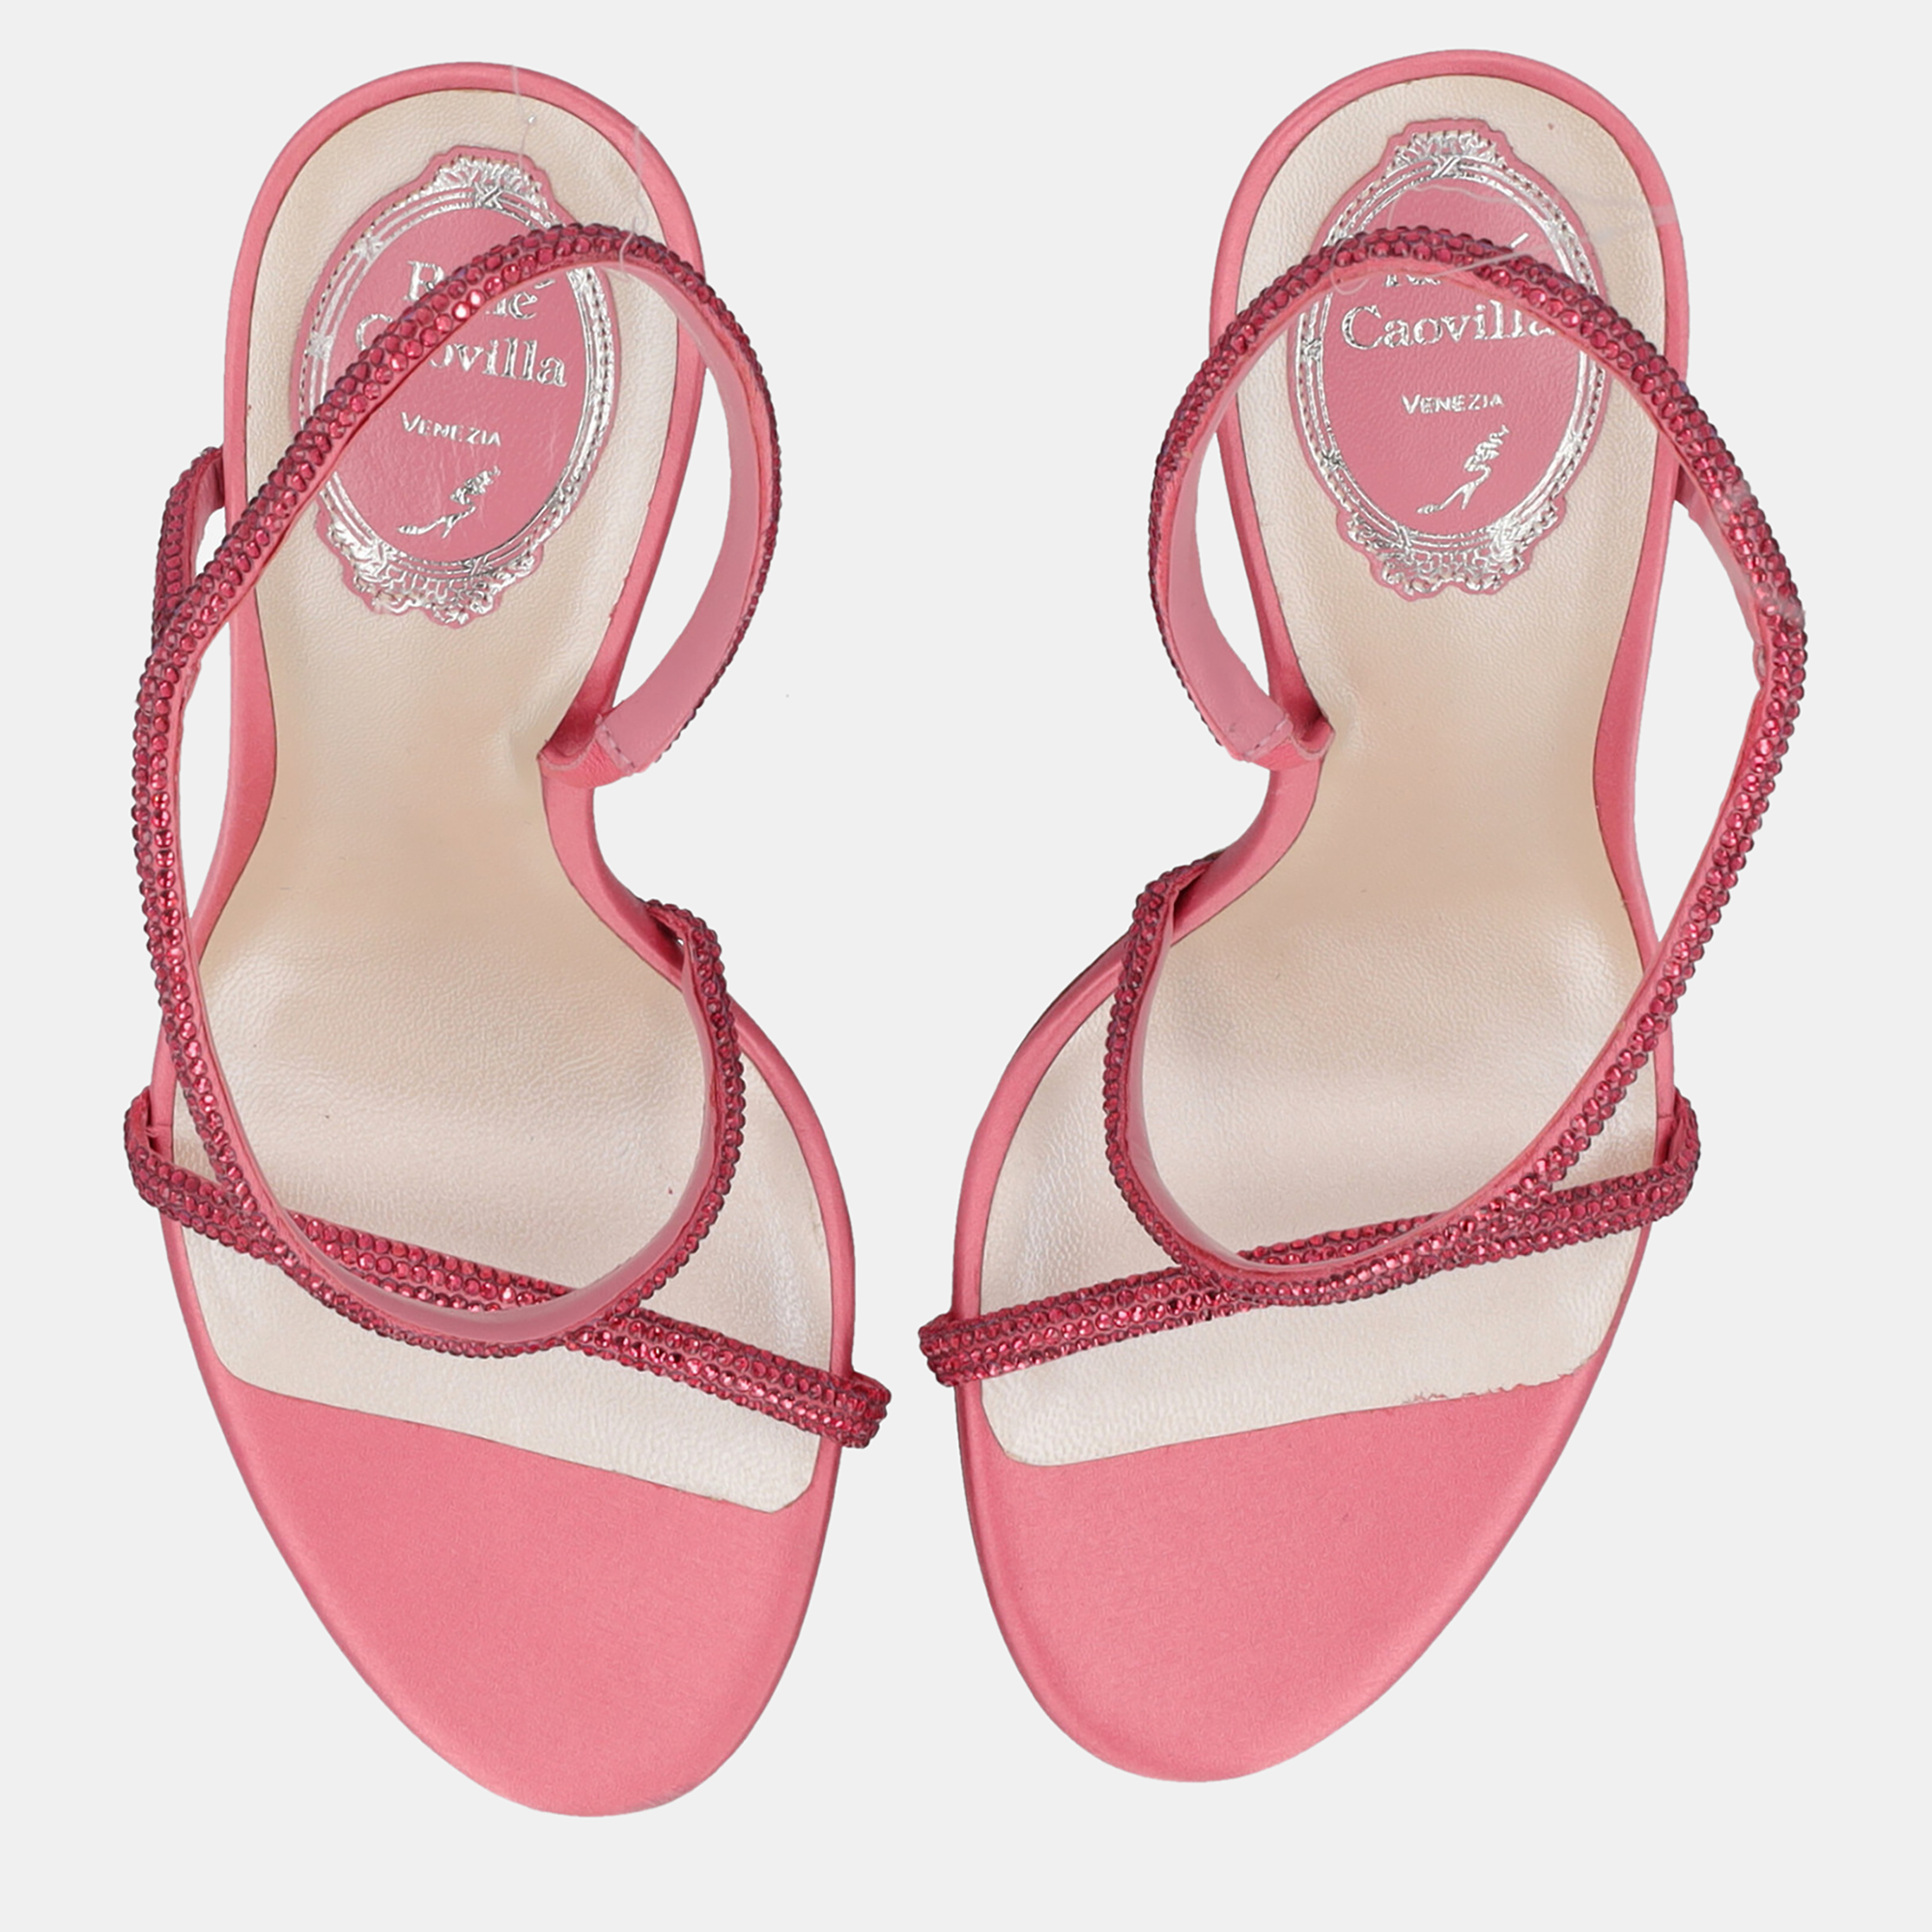 René Caovilla  Women's Synthetic Fibers Sandals - Pink - EU 39